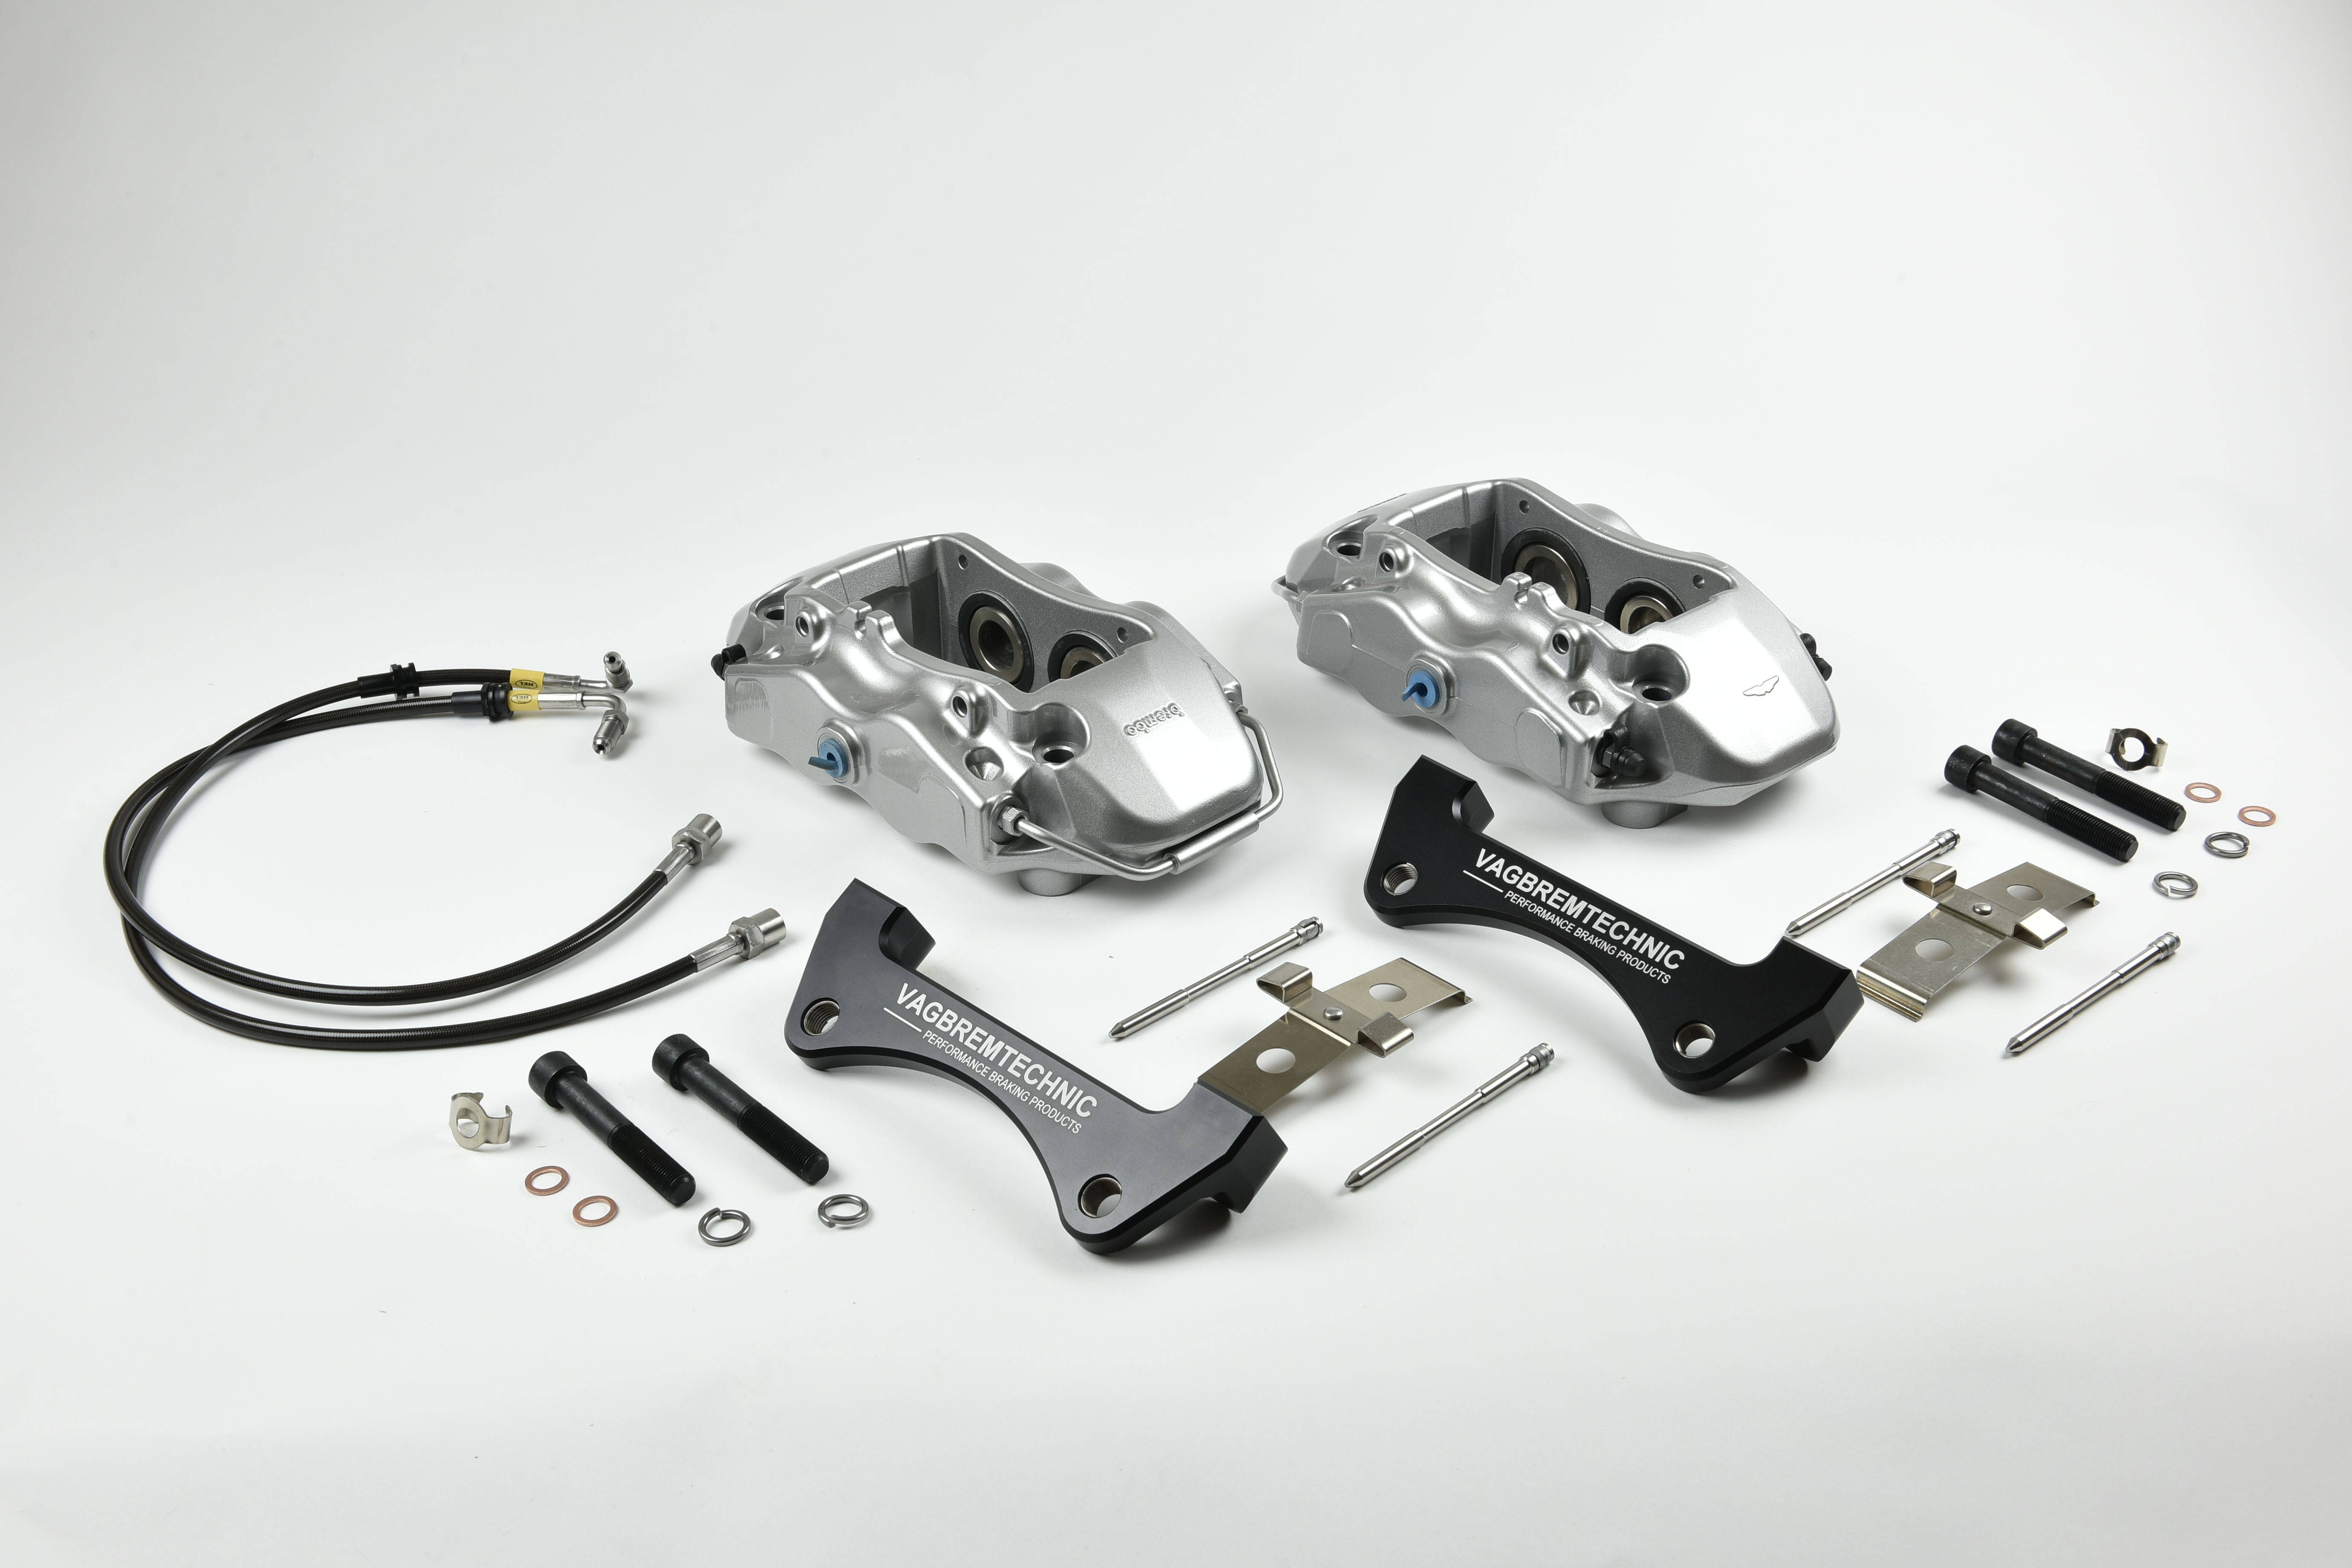 Vagbremtechnic 7 Vagbremtechnic Releases Details Of Brembo Brake Kit For Various VW Group Models